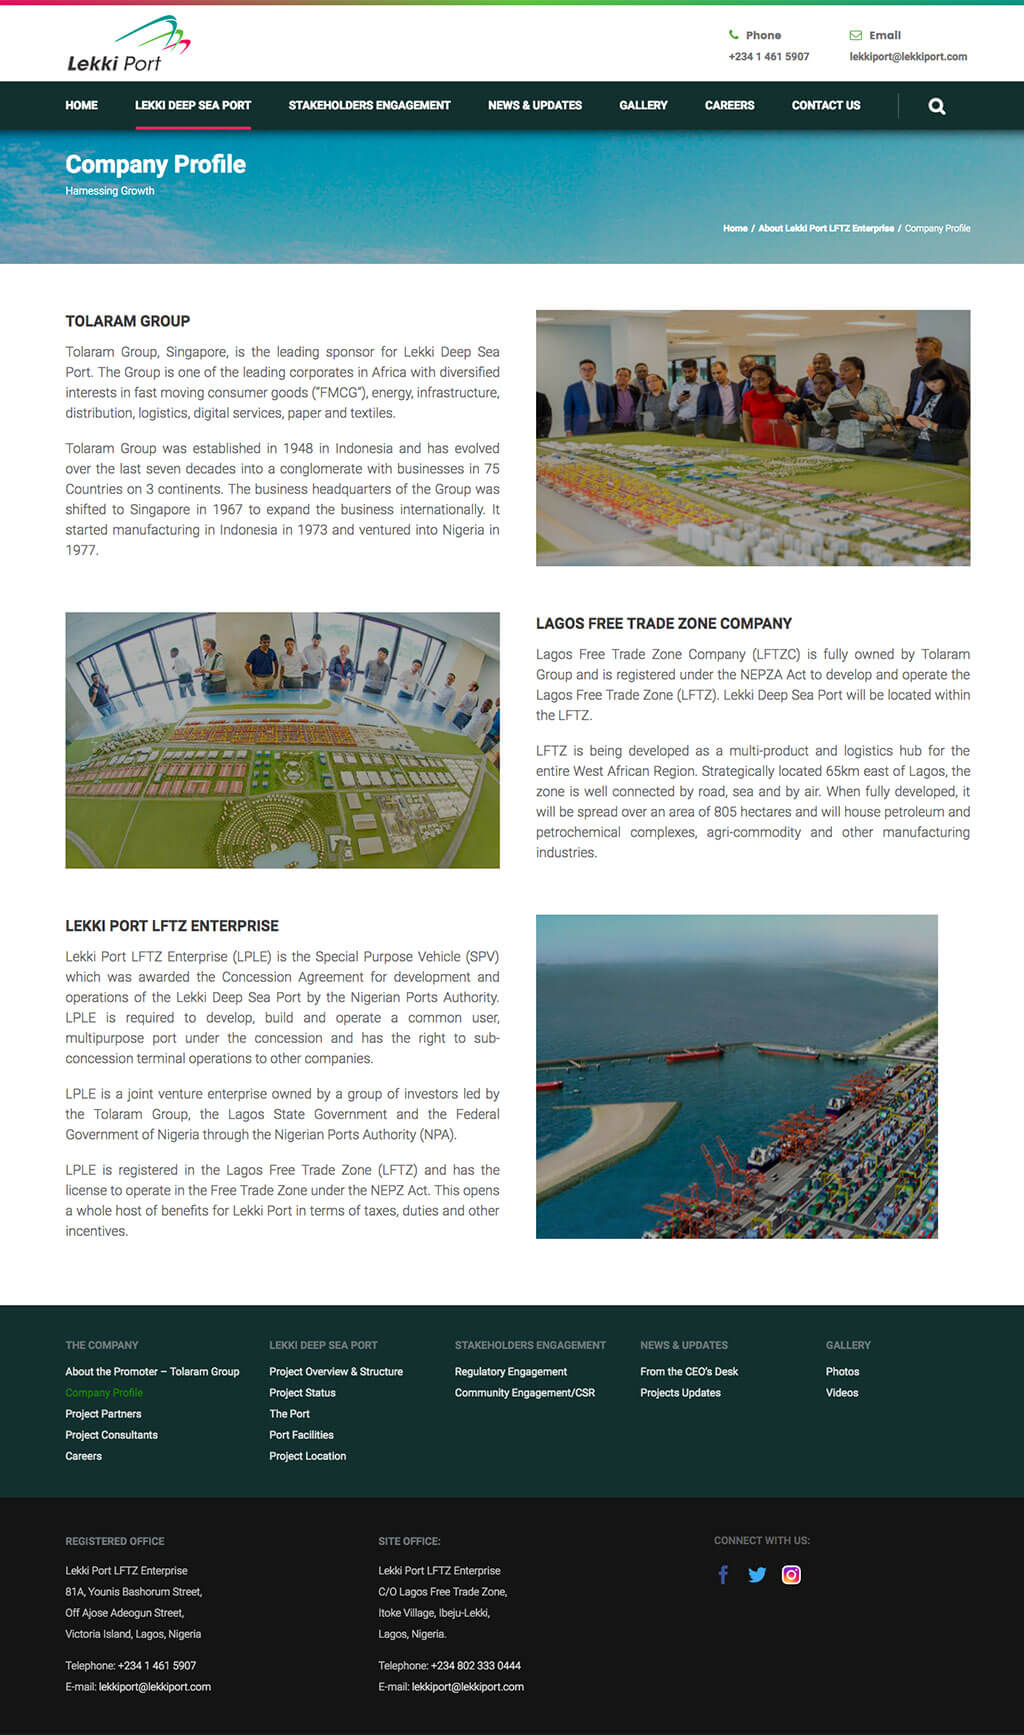 Lekki-port-website-design-project-page-2